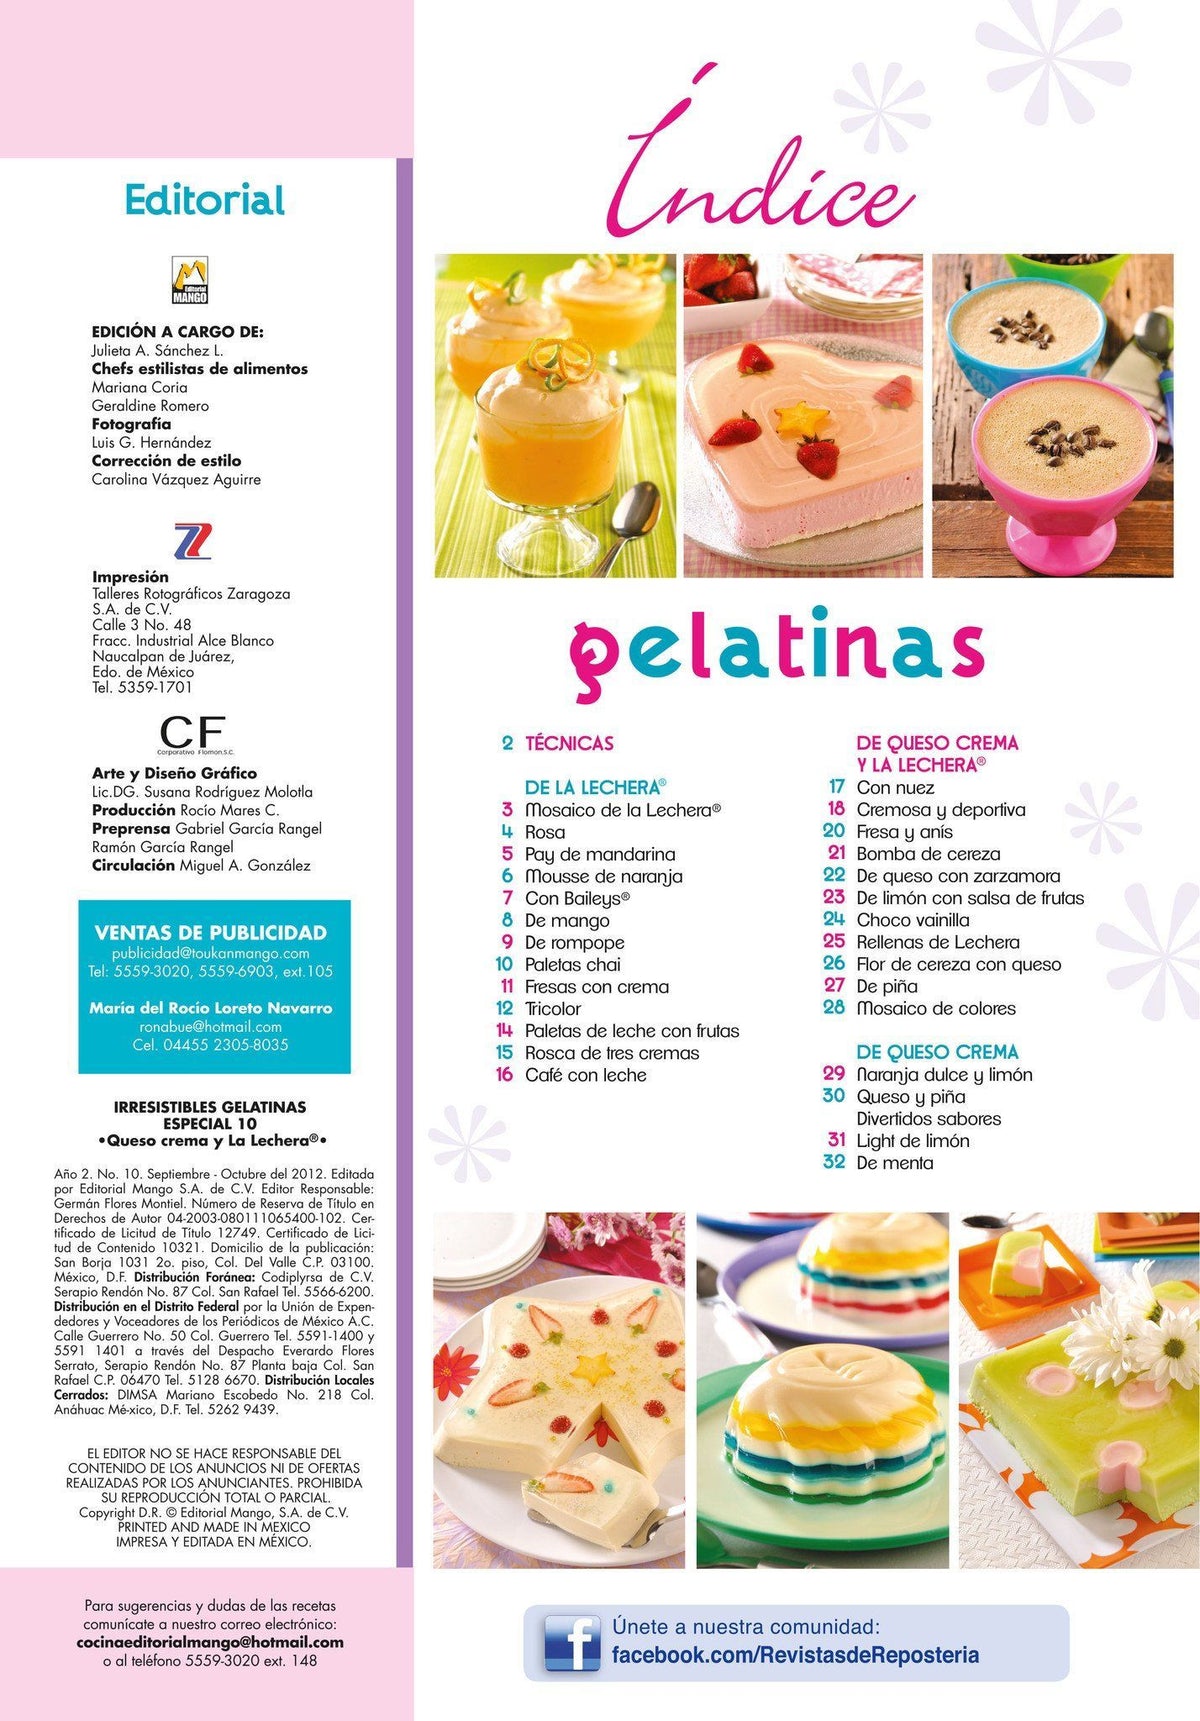 Irresistibles Gelatinas Especial No. 10 - Queso crema y la lechera - Formato Digital - ToukanMango